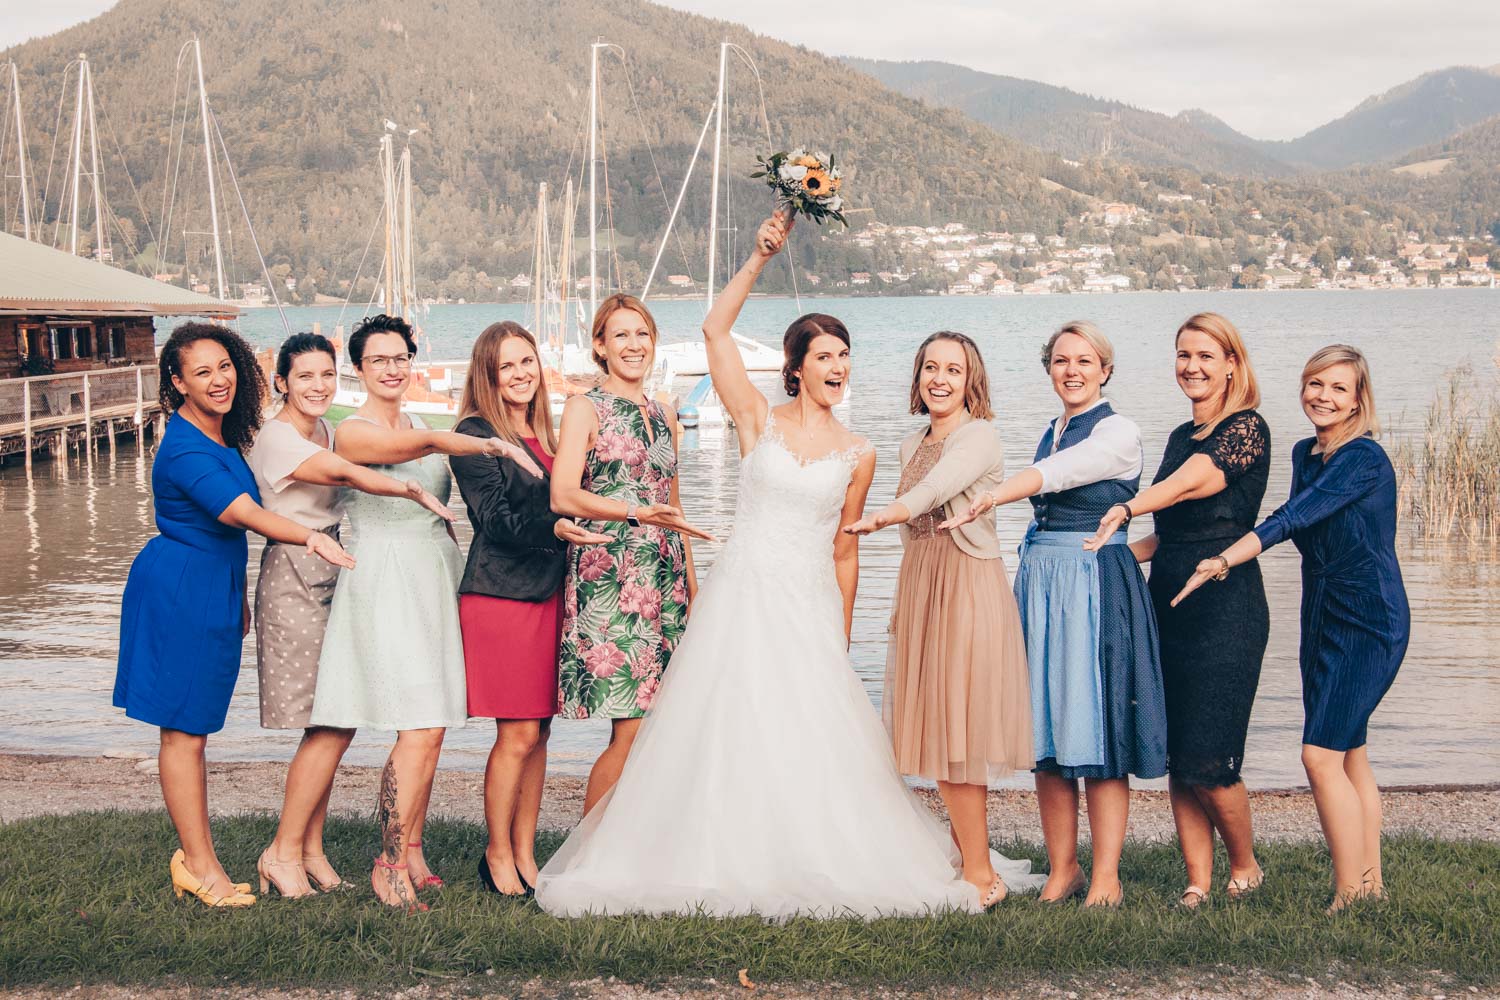 Gemeinsam mit ihren Freundinnen feiert die Braut ihre Hochzeit am Ufer des Tegernsee